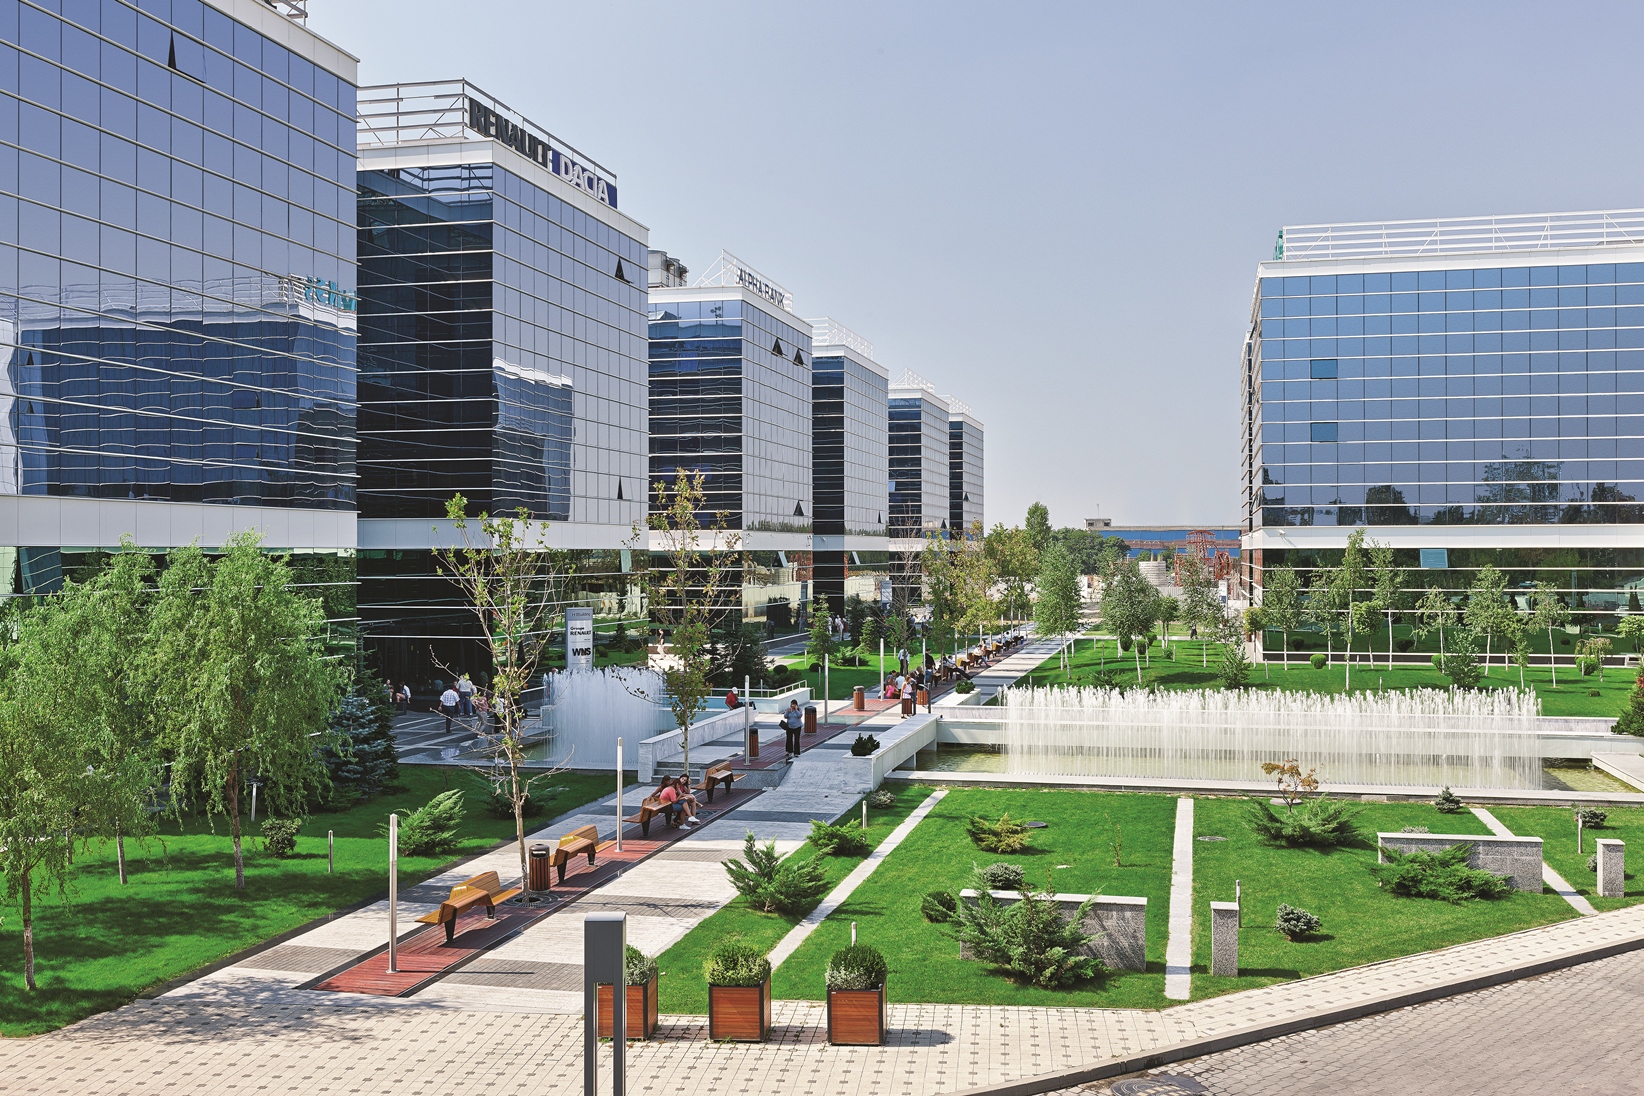 Premiera pe piata imobiliara bucuresteana: parcurile verzi de birouri (Foto)